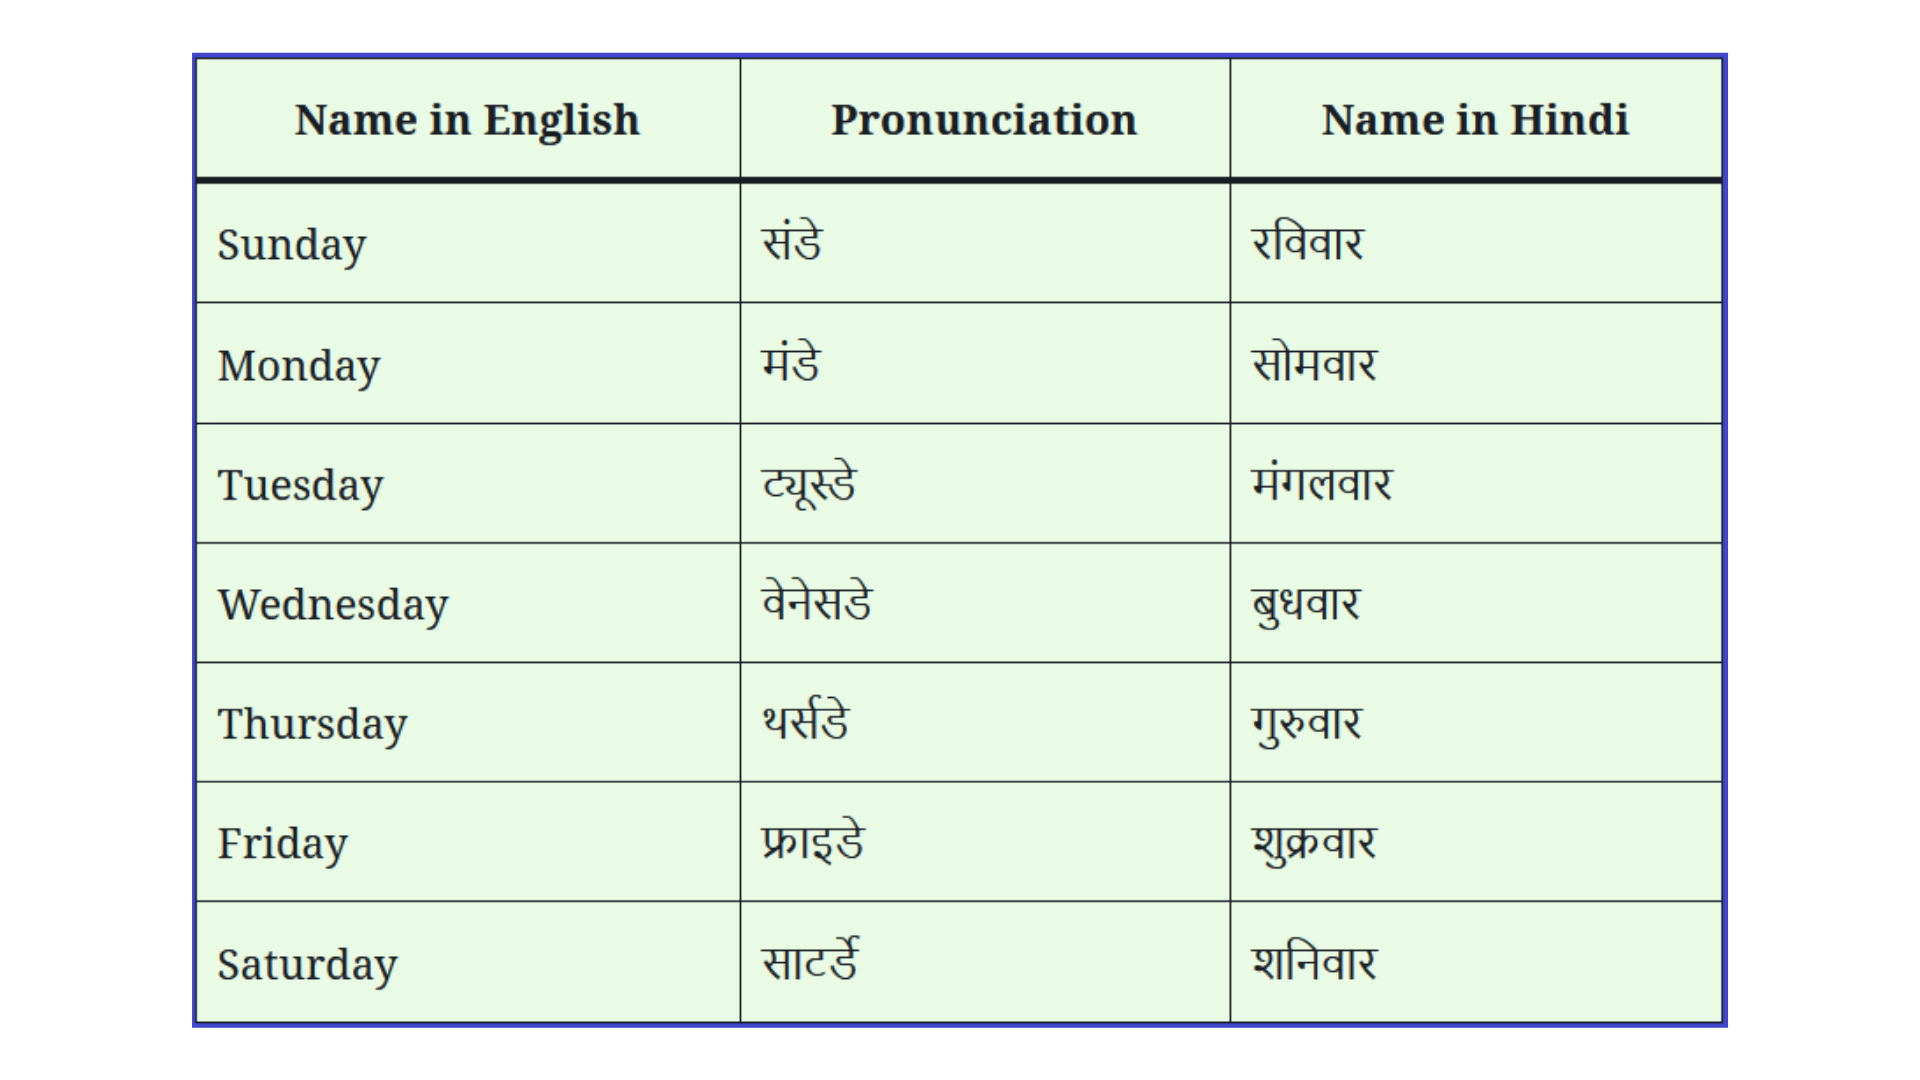 Week Days Name in Hindi